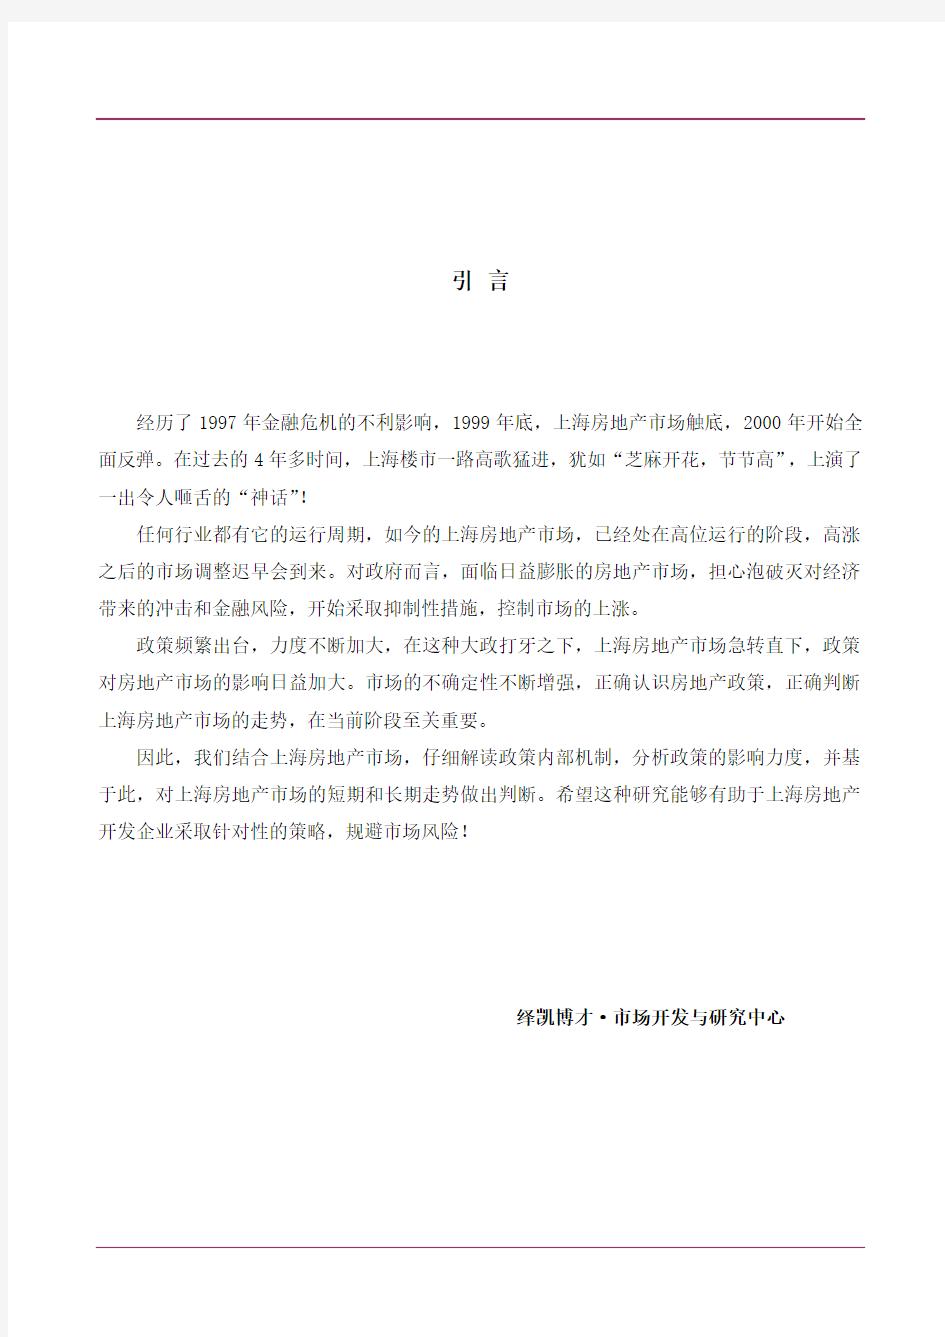 政策对上海房地产市场影响专题分析报告(1)